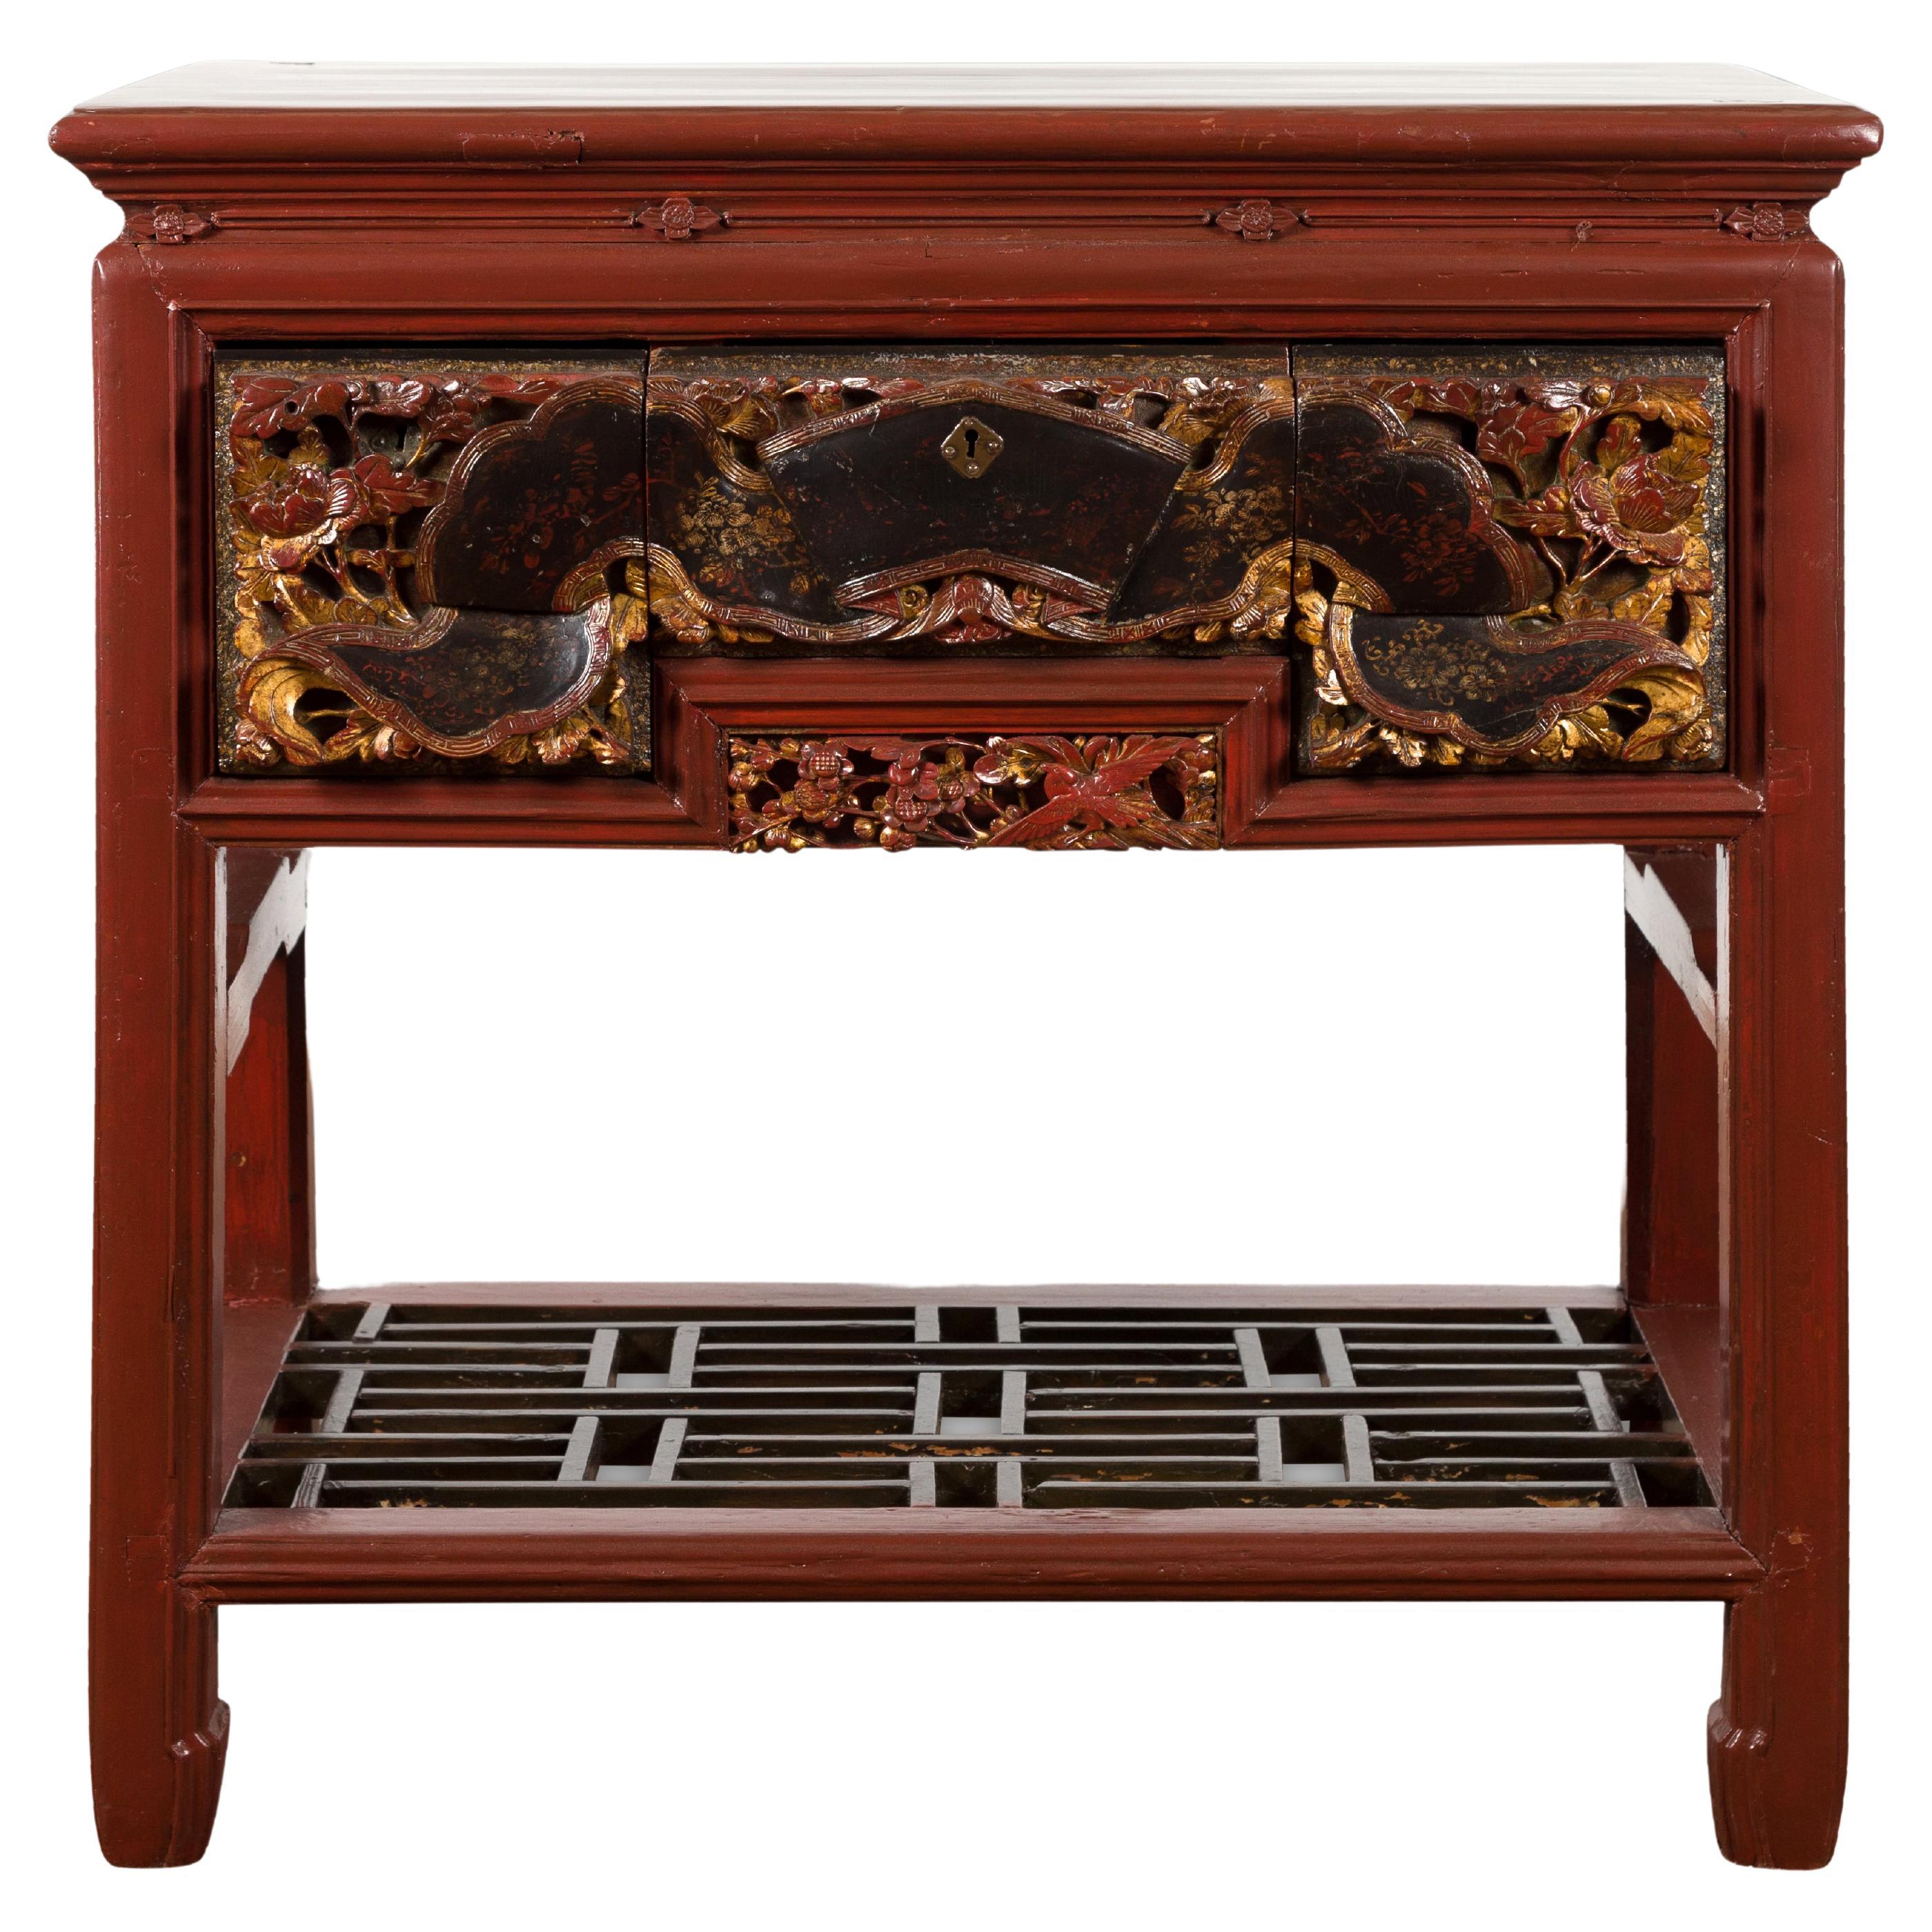 Table console chinoise laquée rouge avec tiroirs sculptés à la main et étagère géométrique en vente